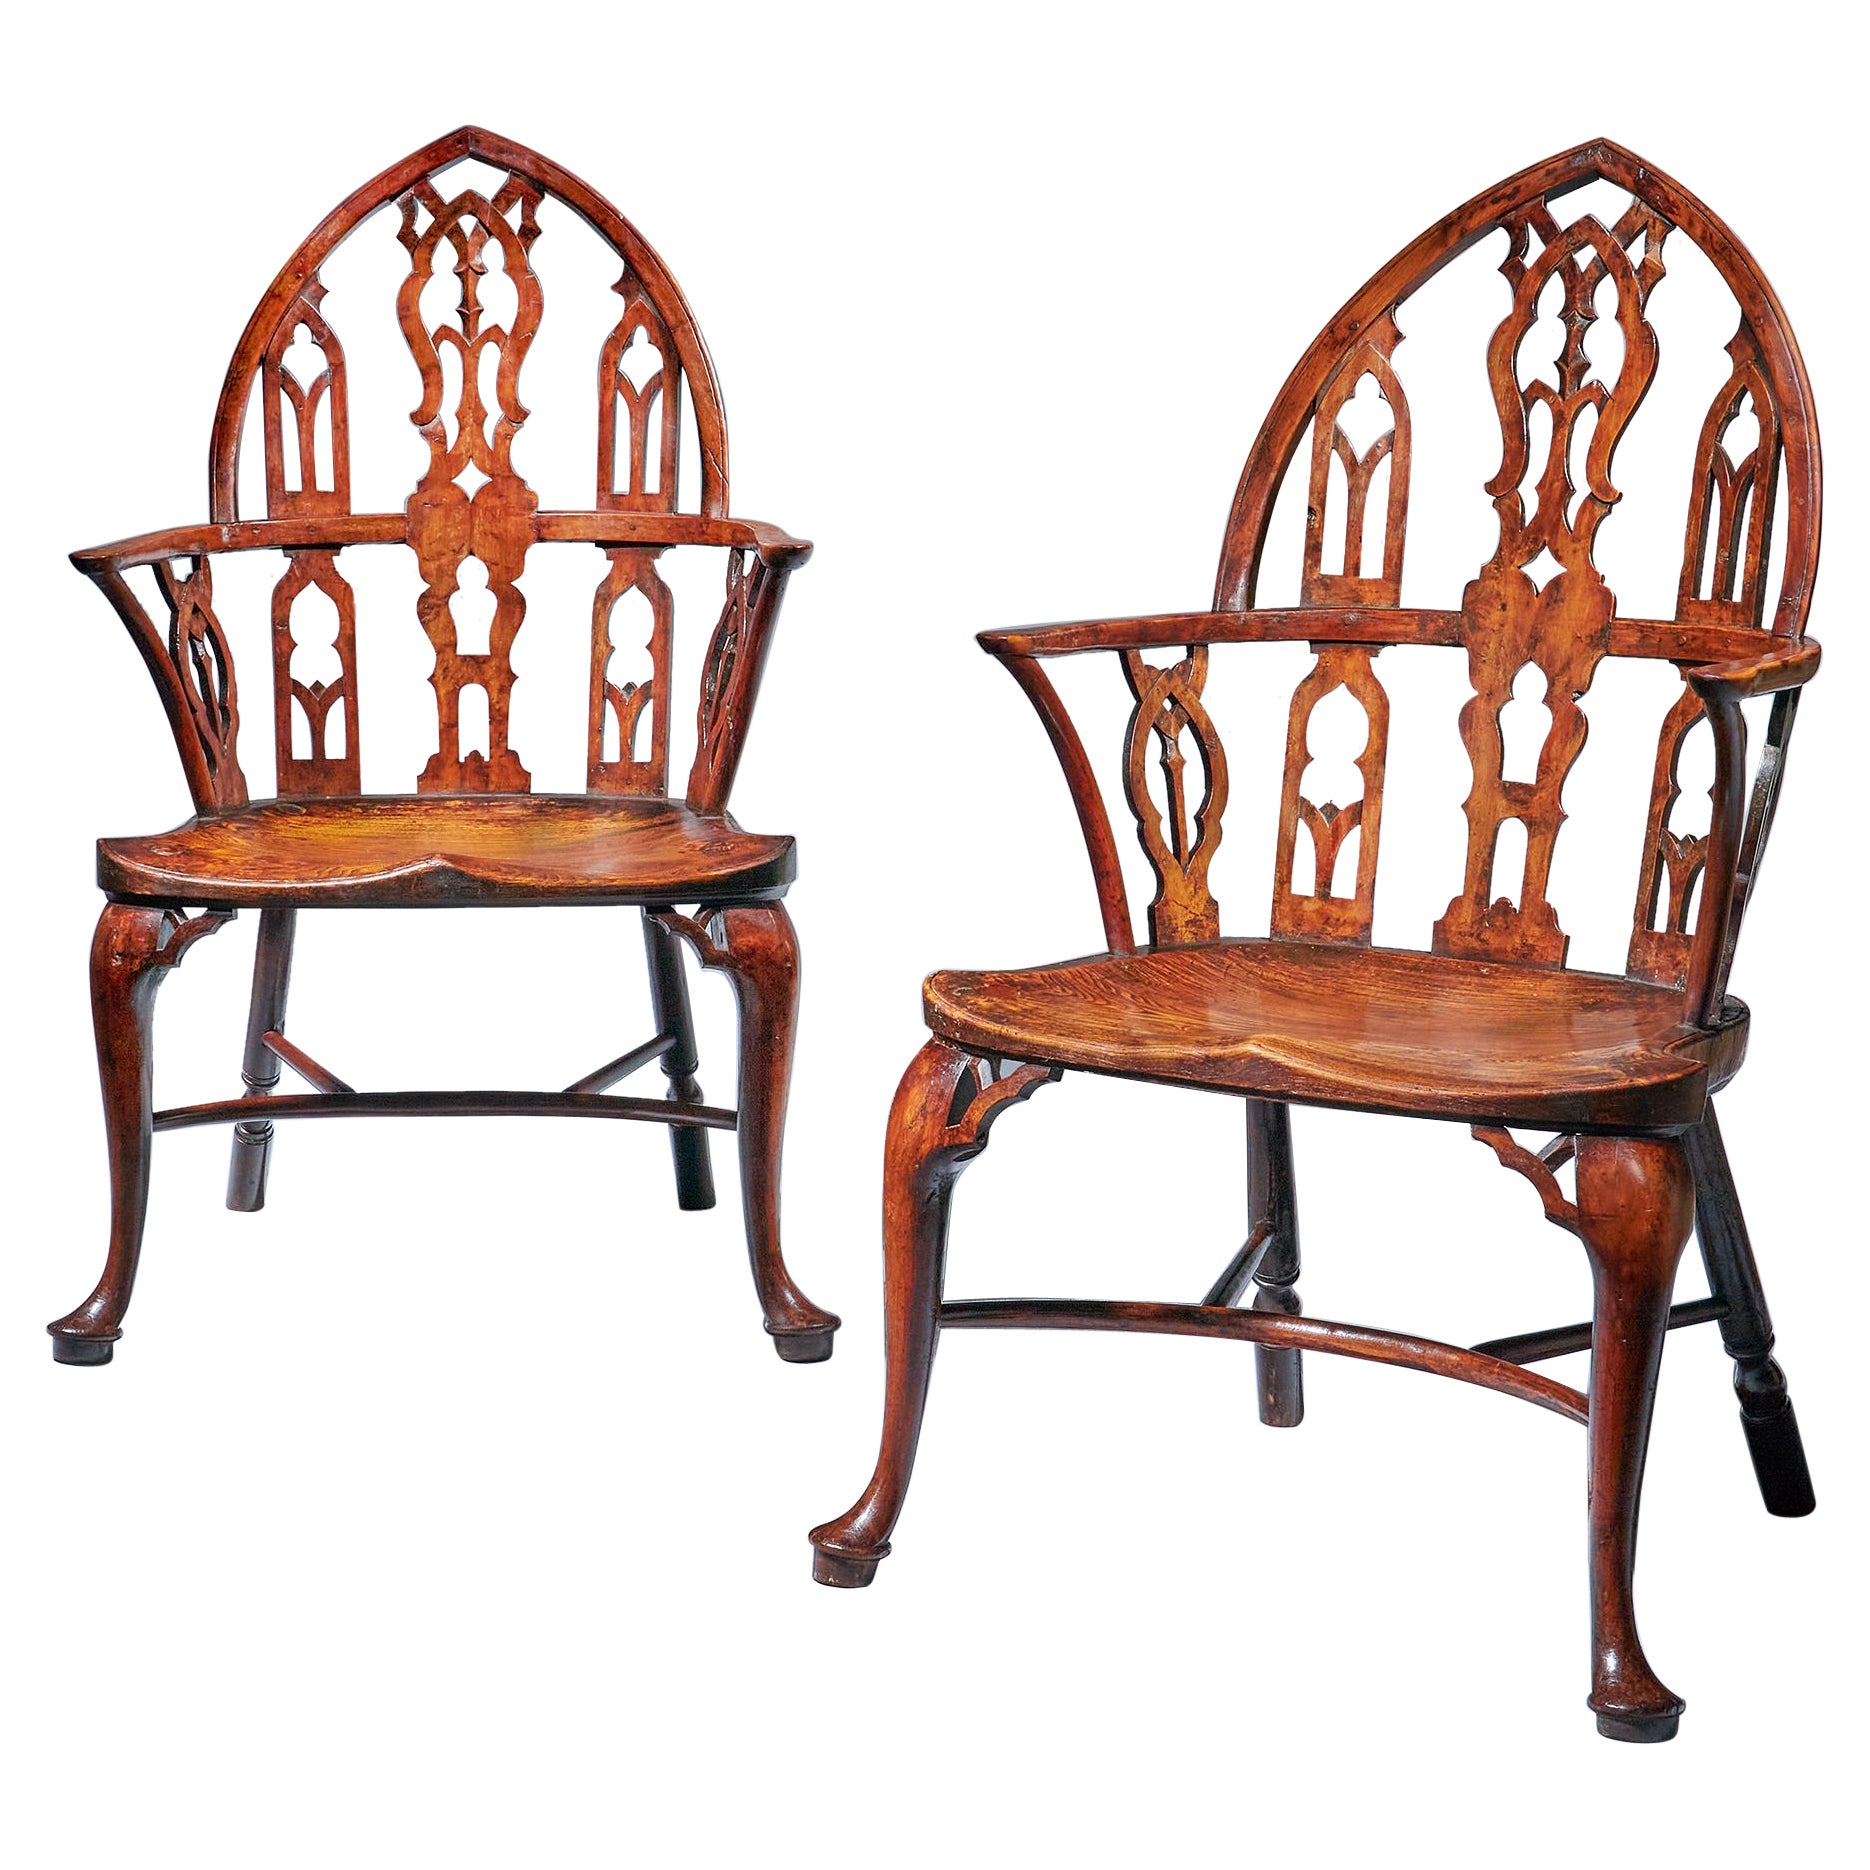 Paire de fauteuils Windsor en orme et if gothique du XVIIIe siècle de George II, vers 1760